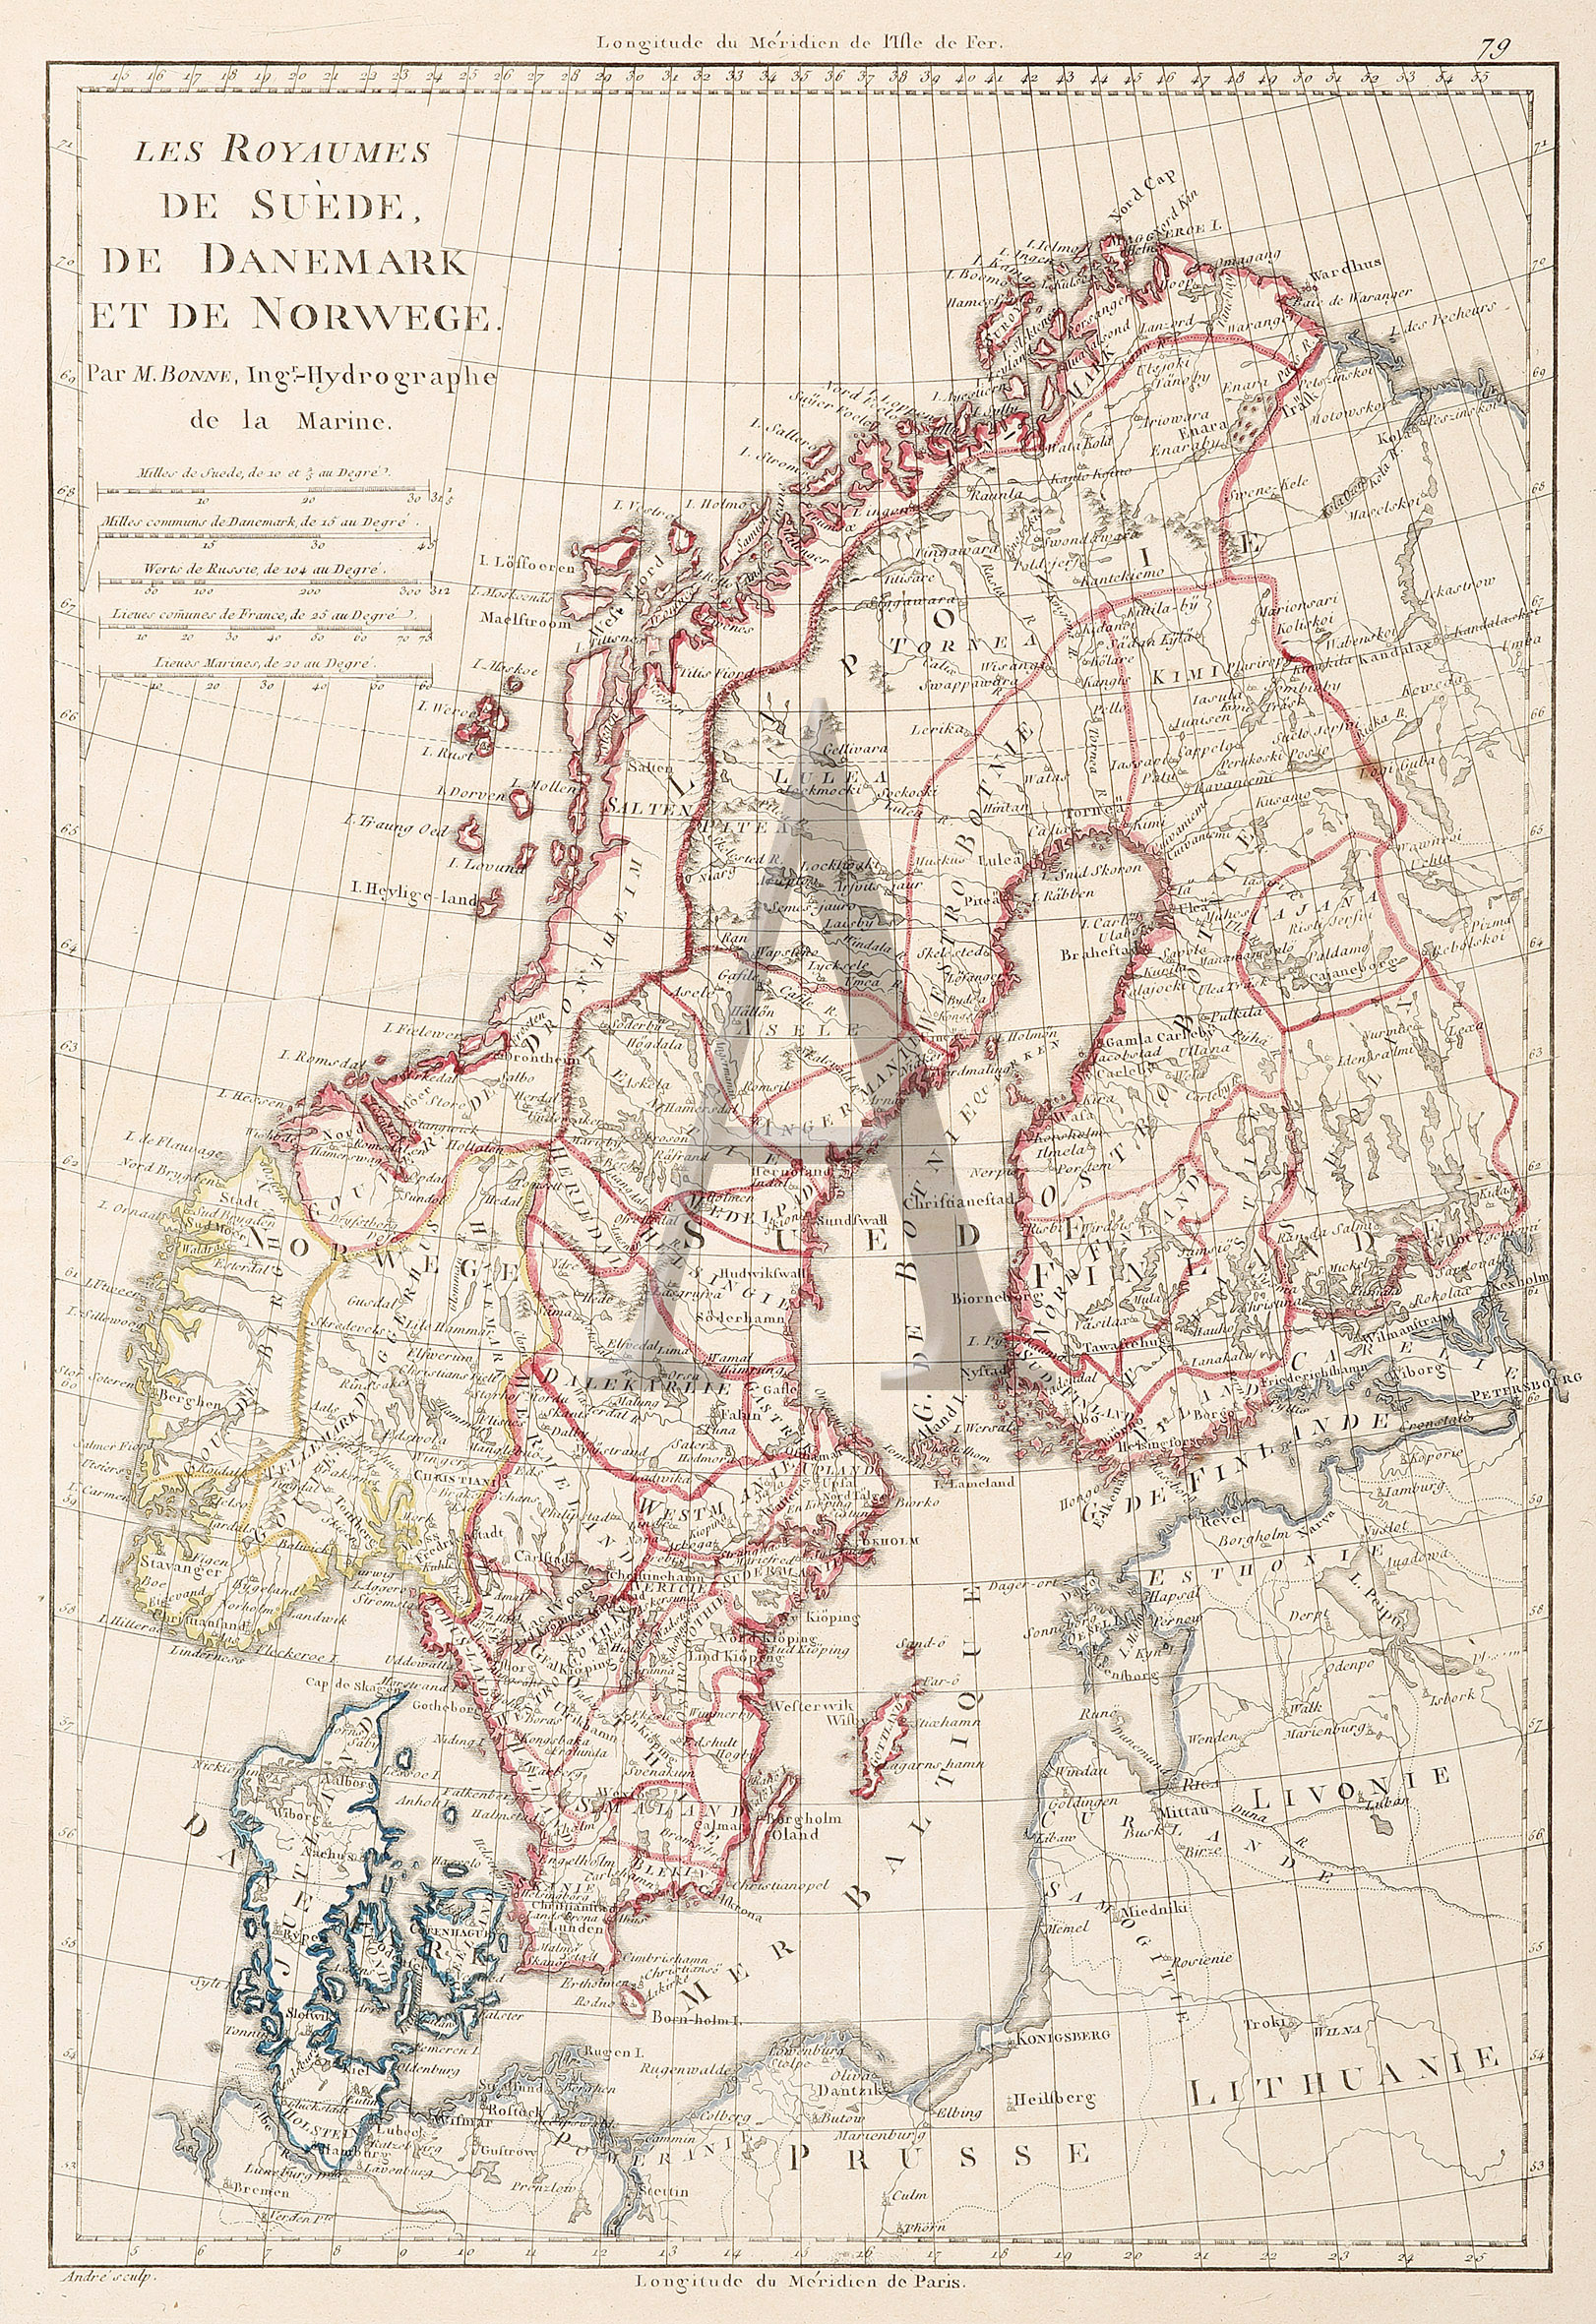 Les Royaumes de Suede, de Danemark et de Norwege. - Antique Print from 1788